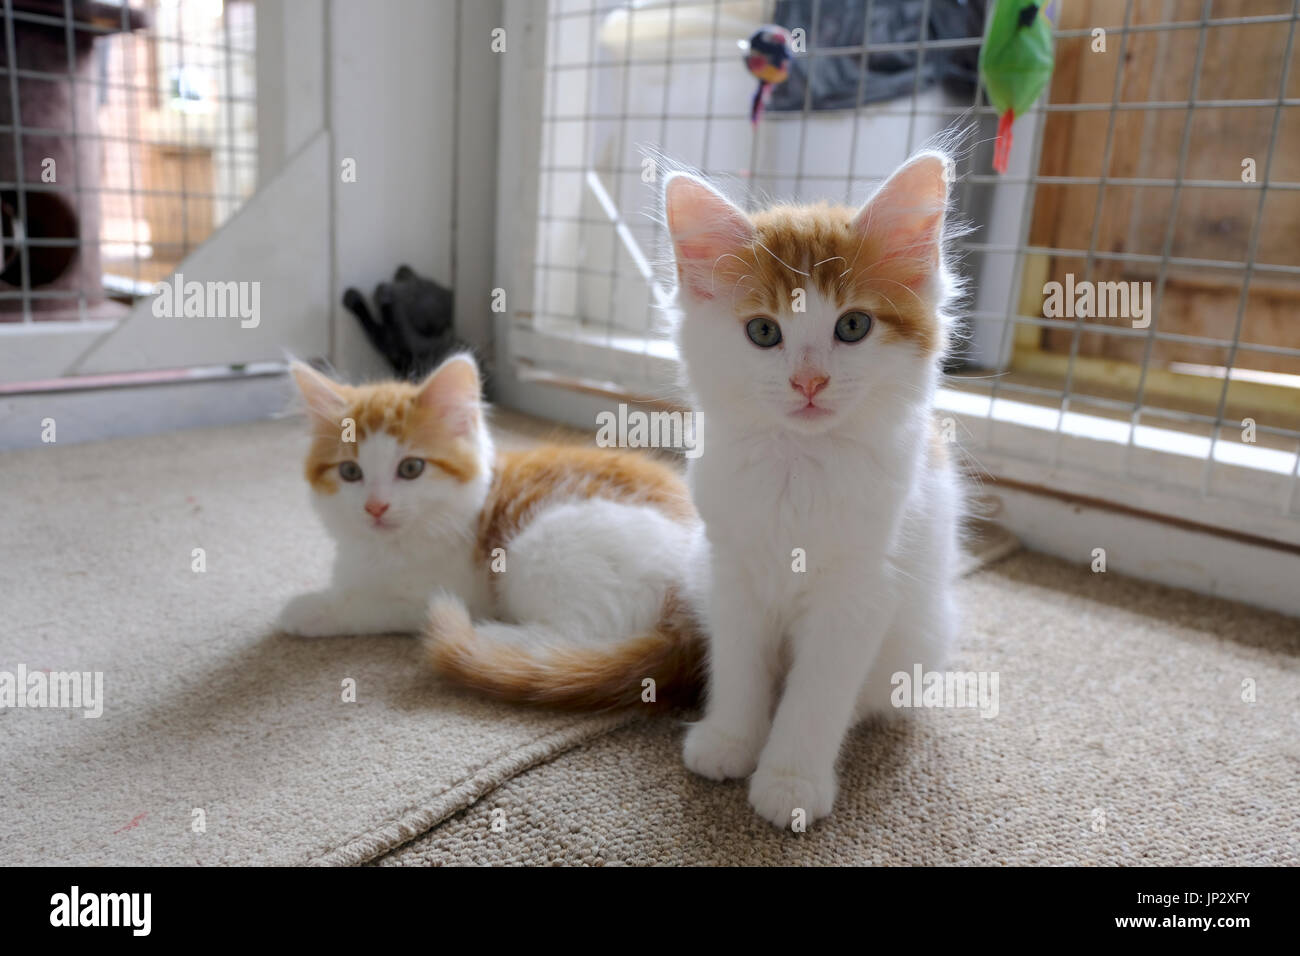 Coppia di zenzero bianco e i gattini in attesa di adozione a British animal rescue center Foto Stock